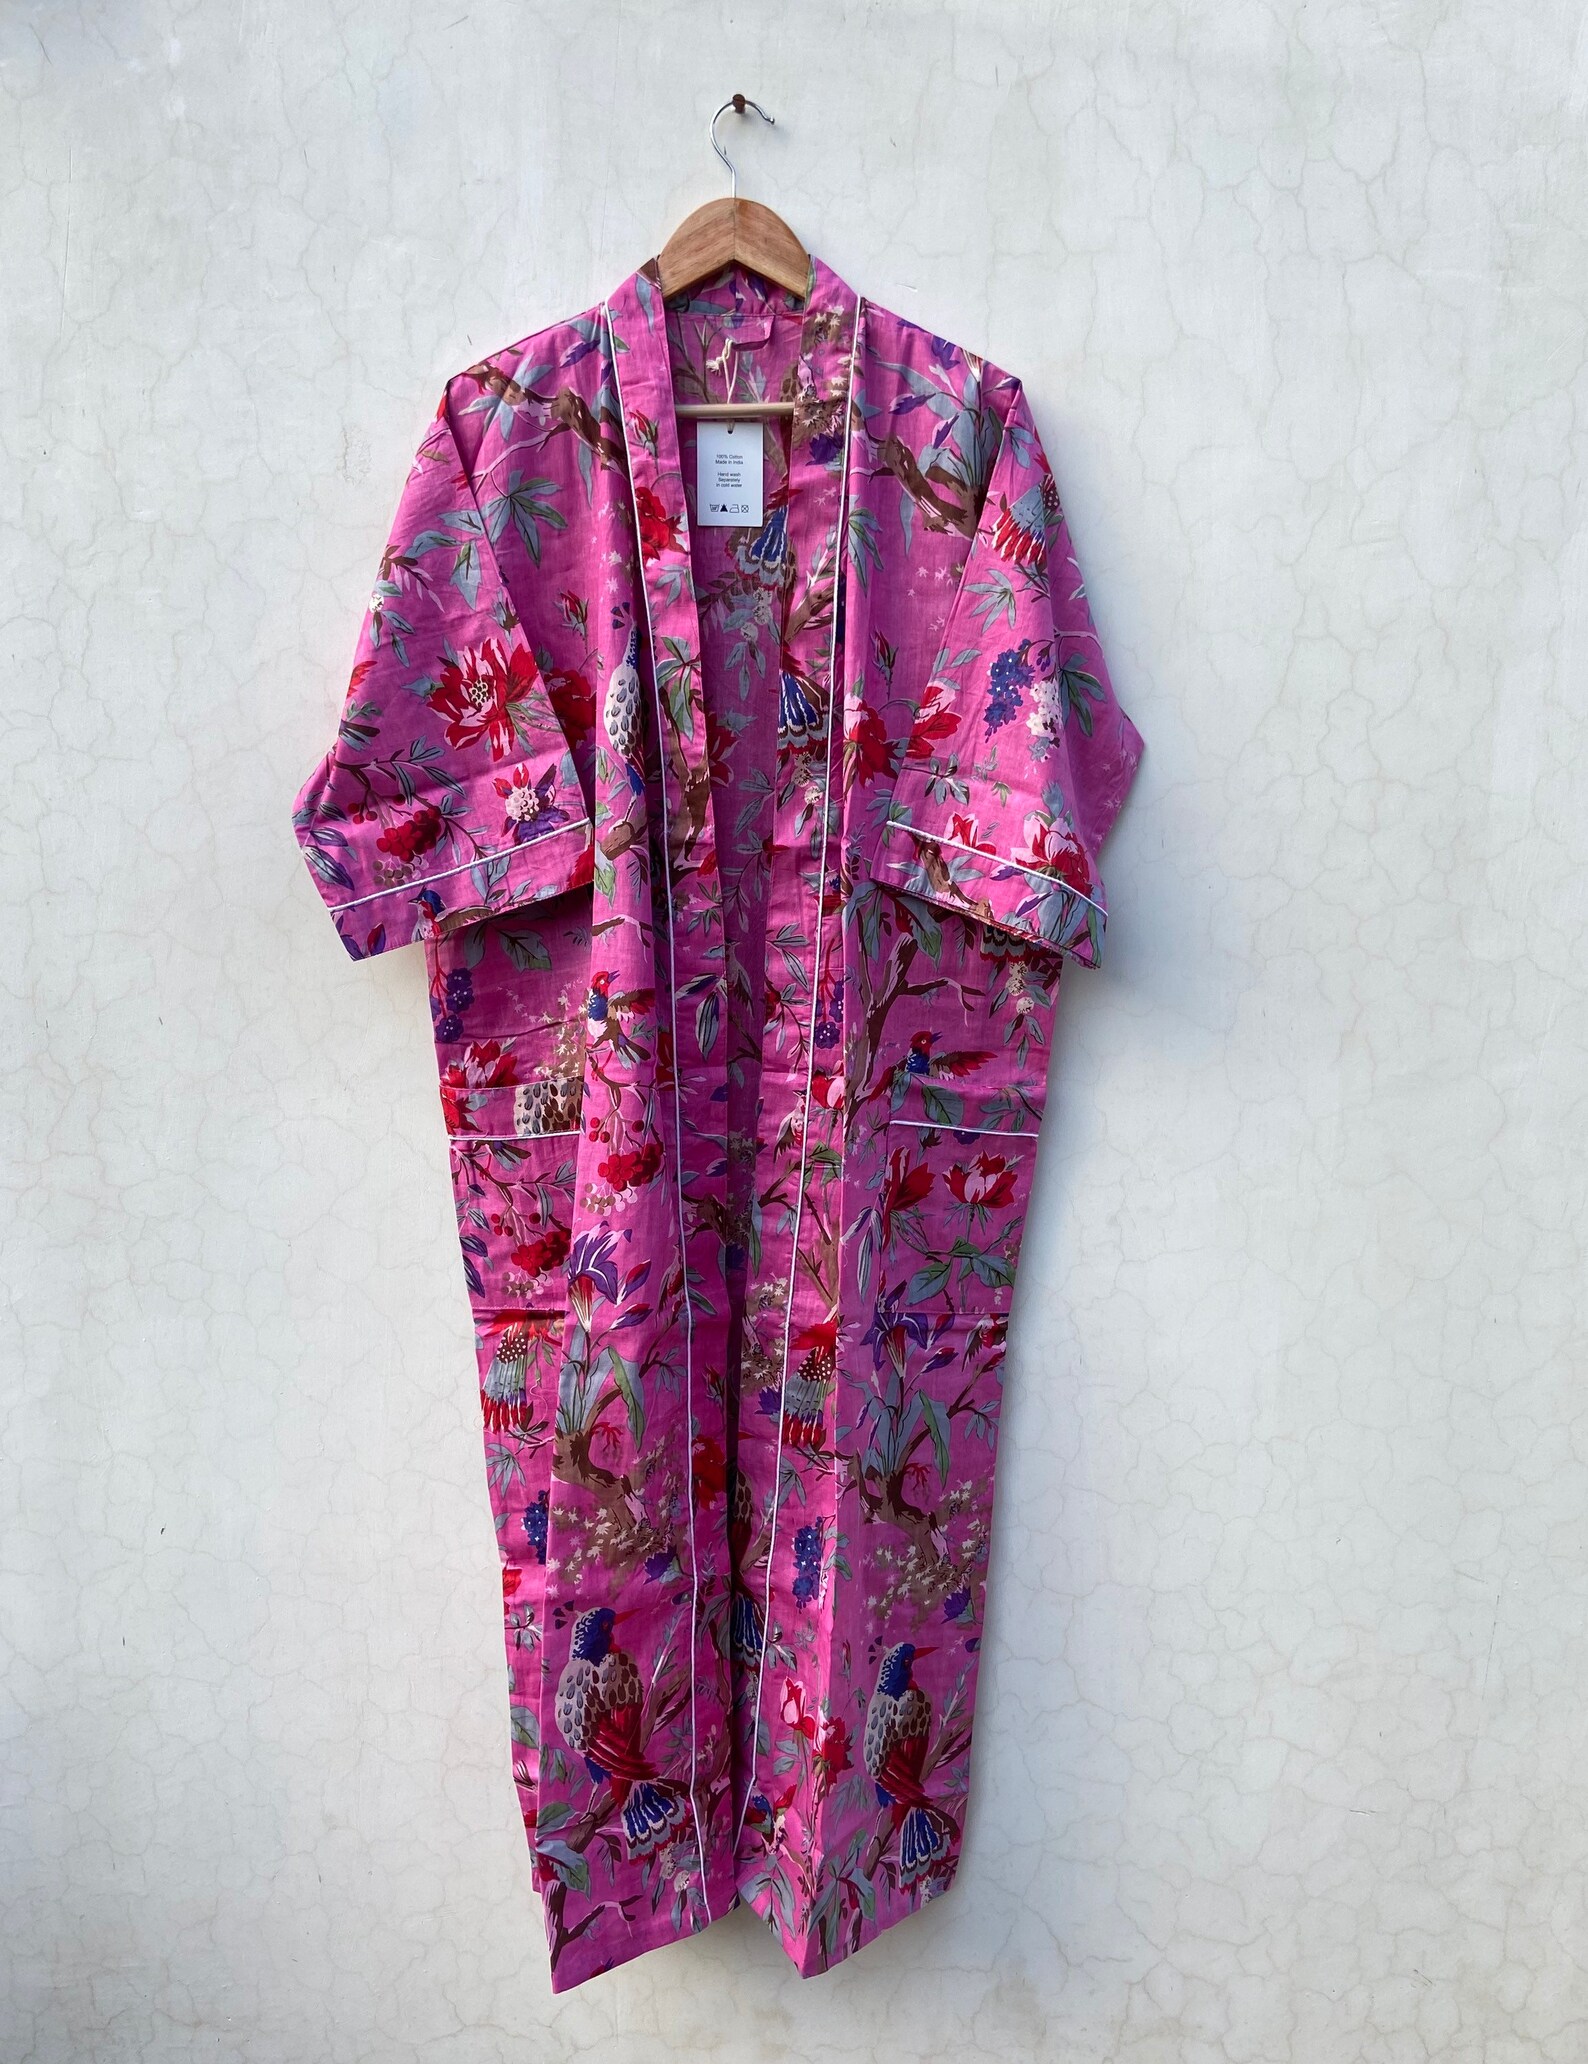 Cotton kimono Robes Bird print Kimono Soft and comfortable | Etsy